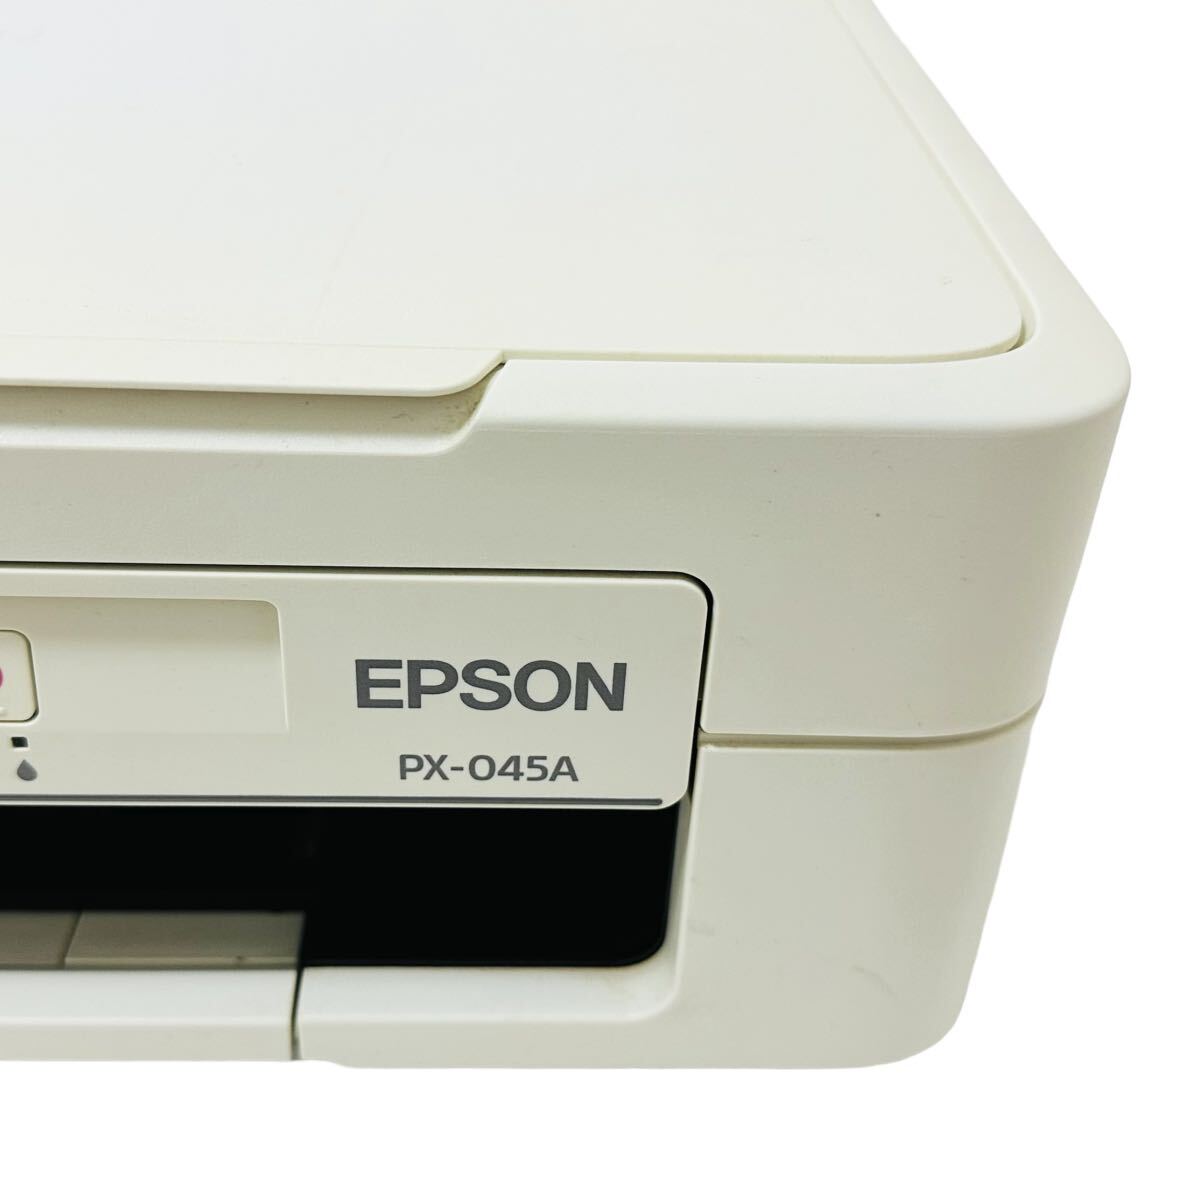 ★ 人気商品 ★ EPSON エプソン Colorio カラリオ インクジェット複合機 PX-045A プリンター 複合機 インクジェットプリンター コピー A4 _画像7